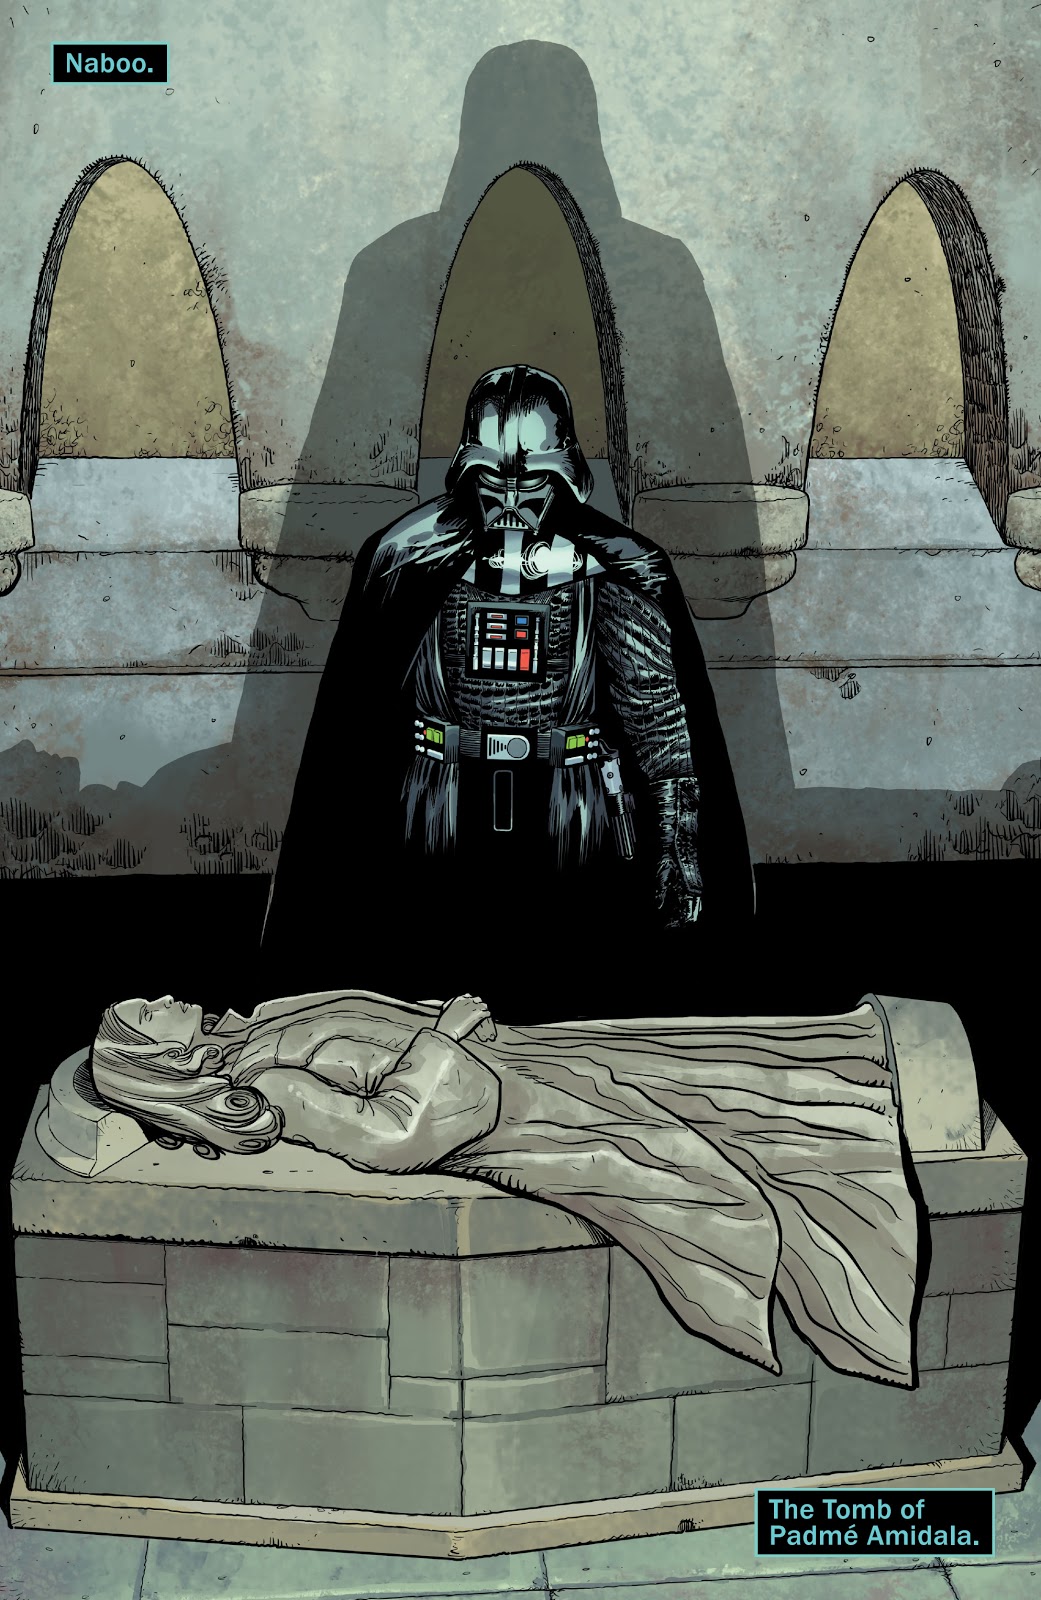 Darth Vader Visits Padme Amidala's Tomb